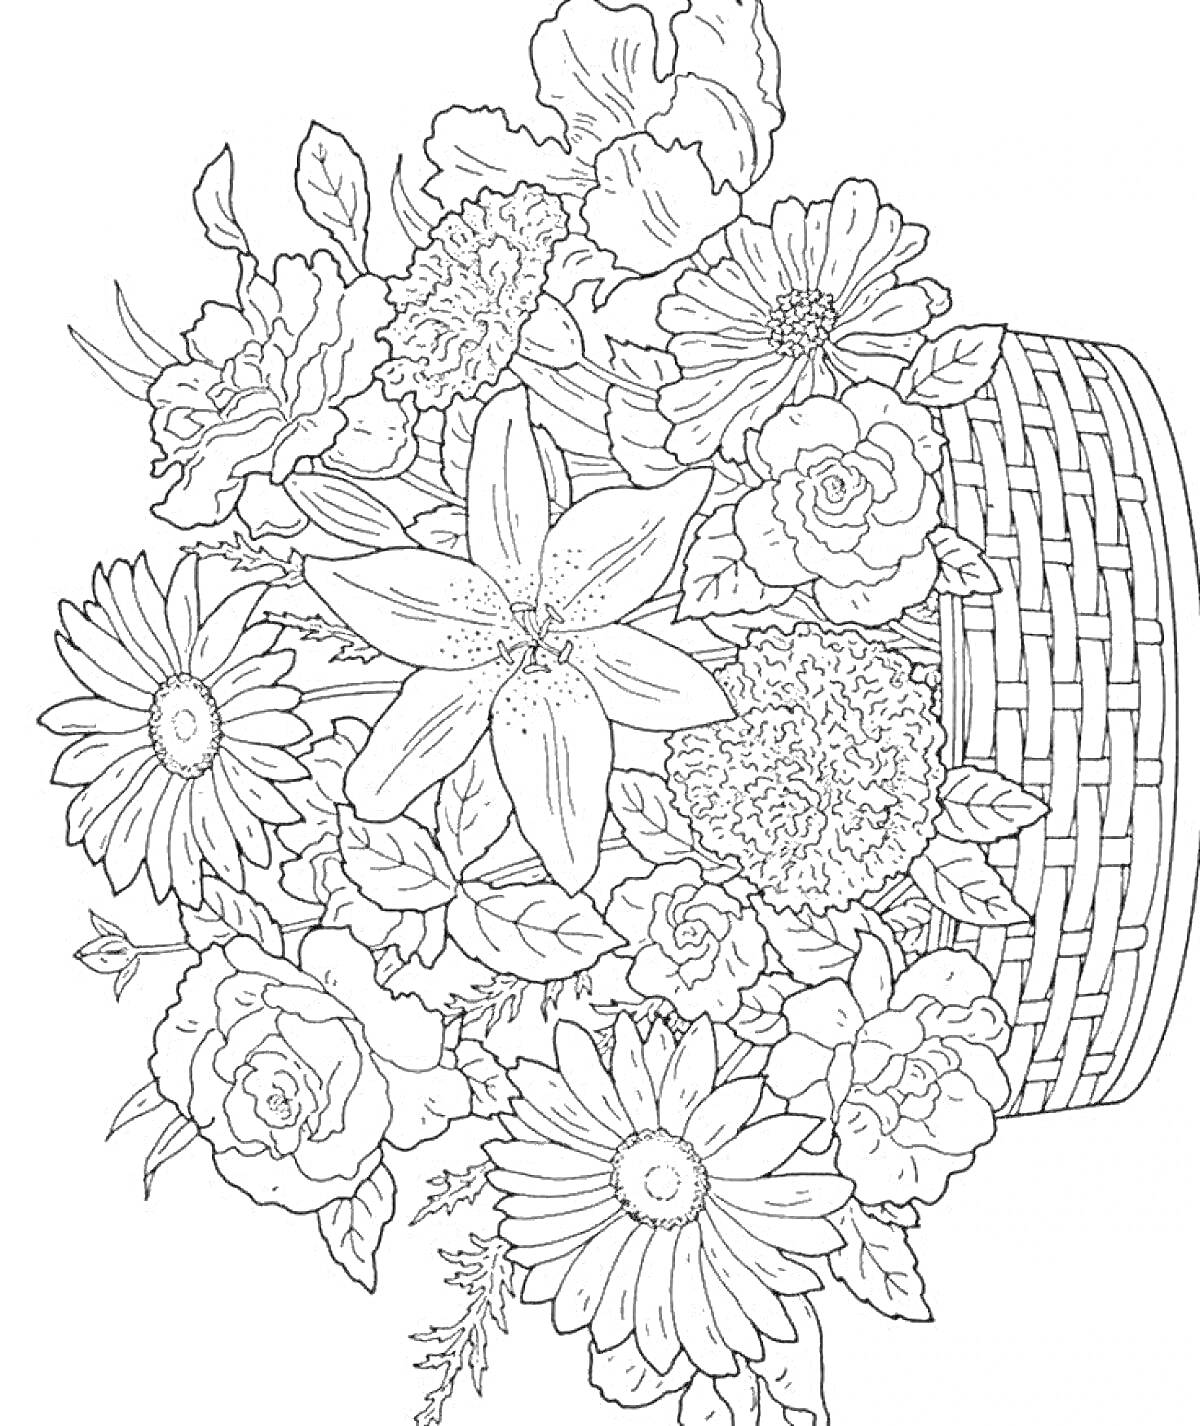 Раскраска Букет крупных цветов в плетеной корзинке, включая ромашки, розы, маргаритки и лилии